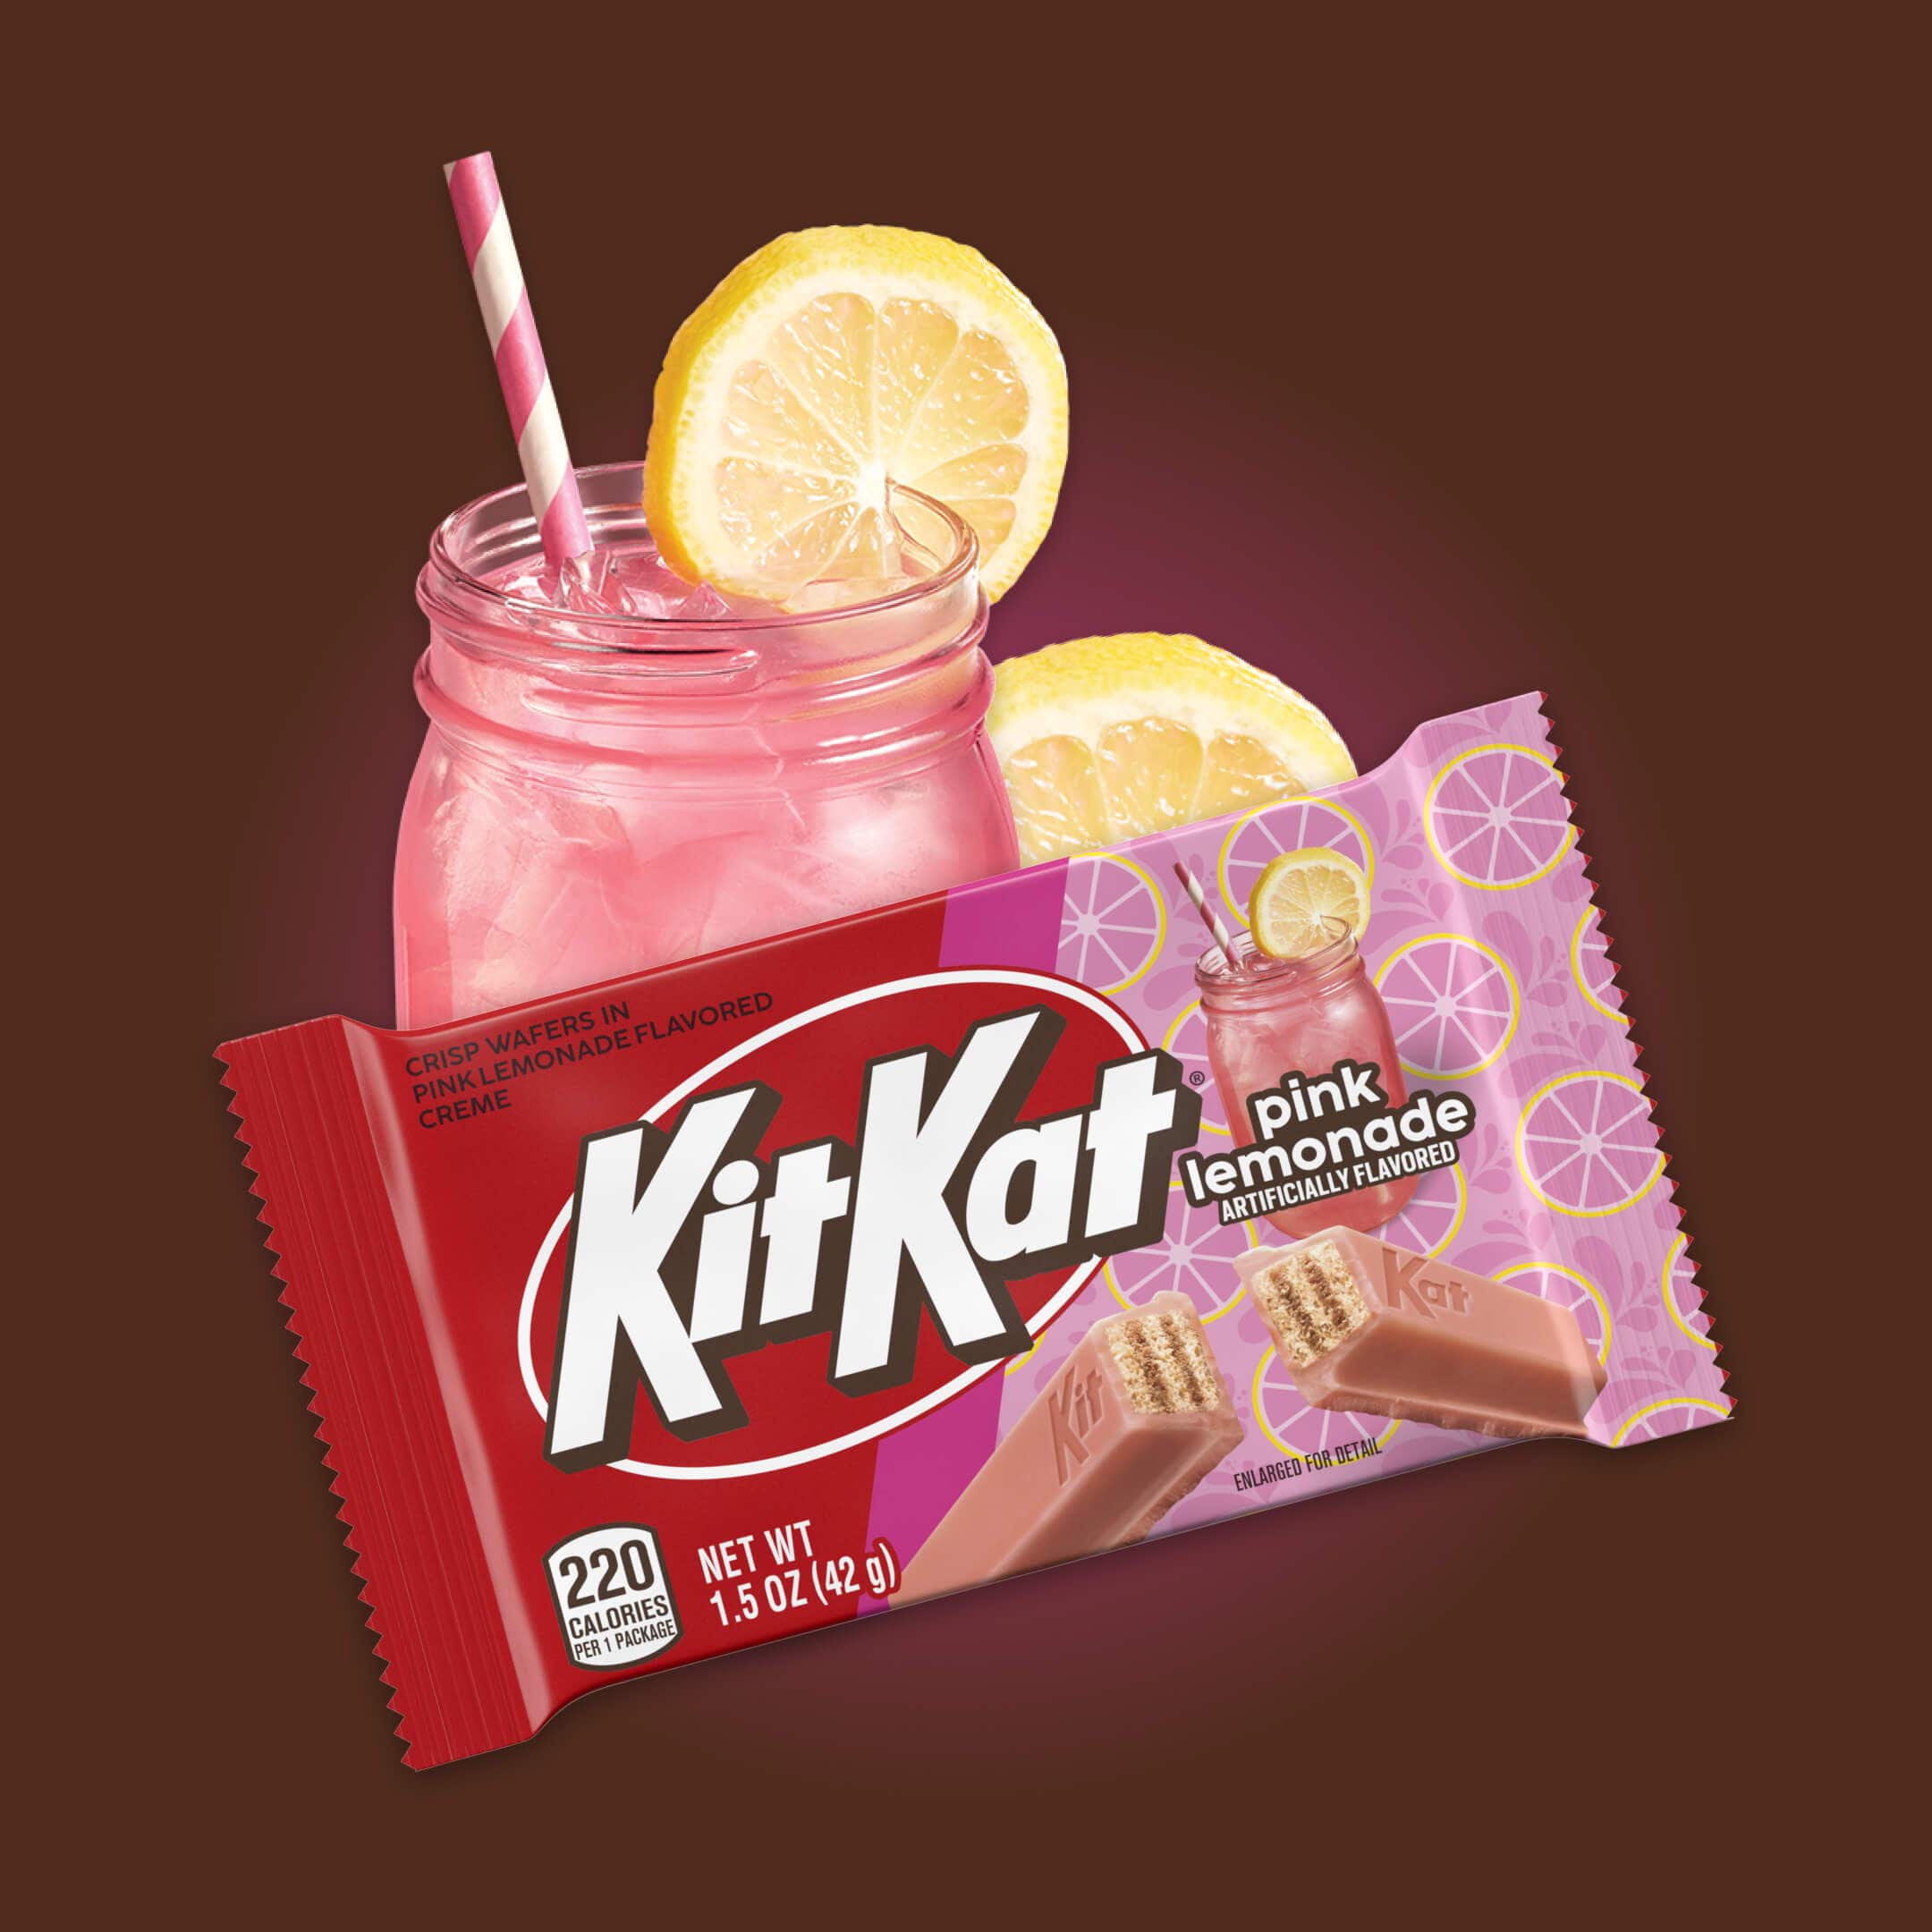 pink lemonade flavored kit kat bar packaging